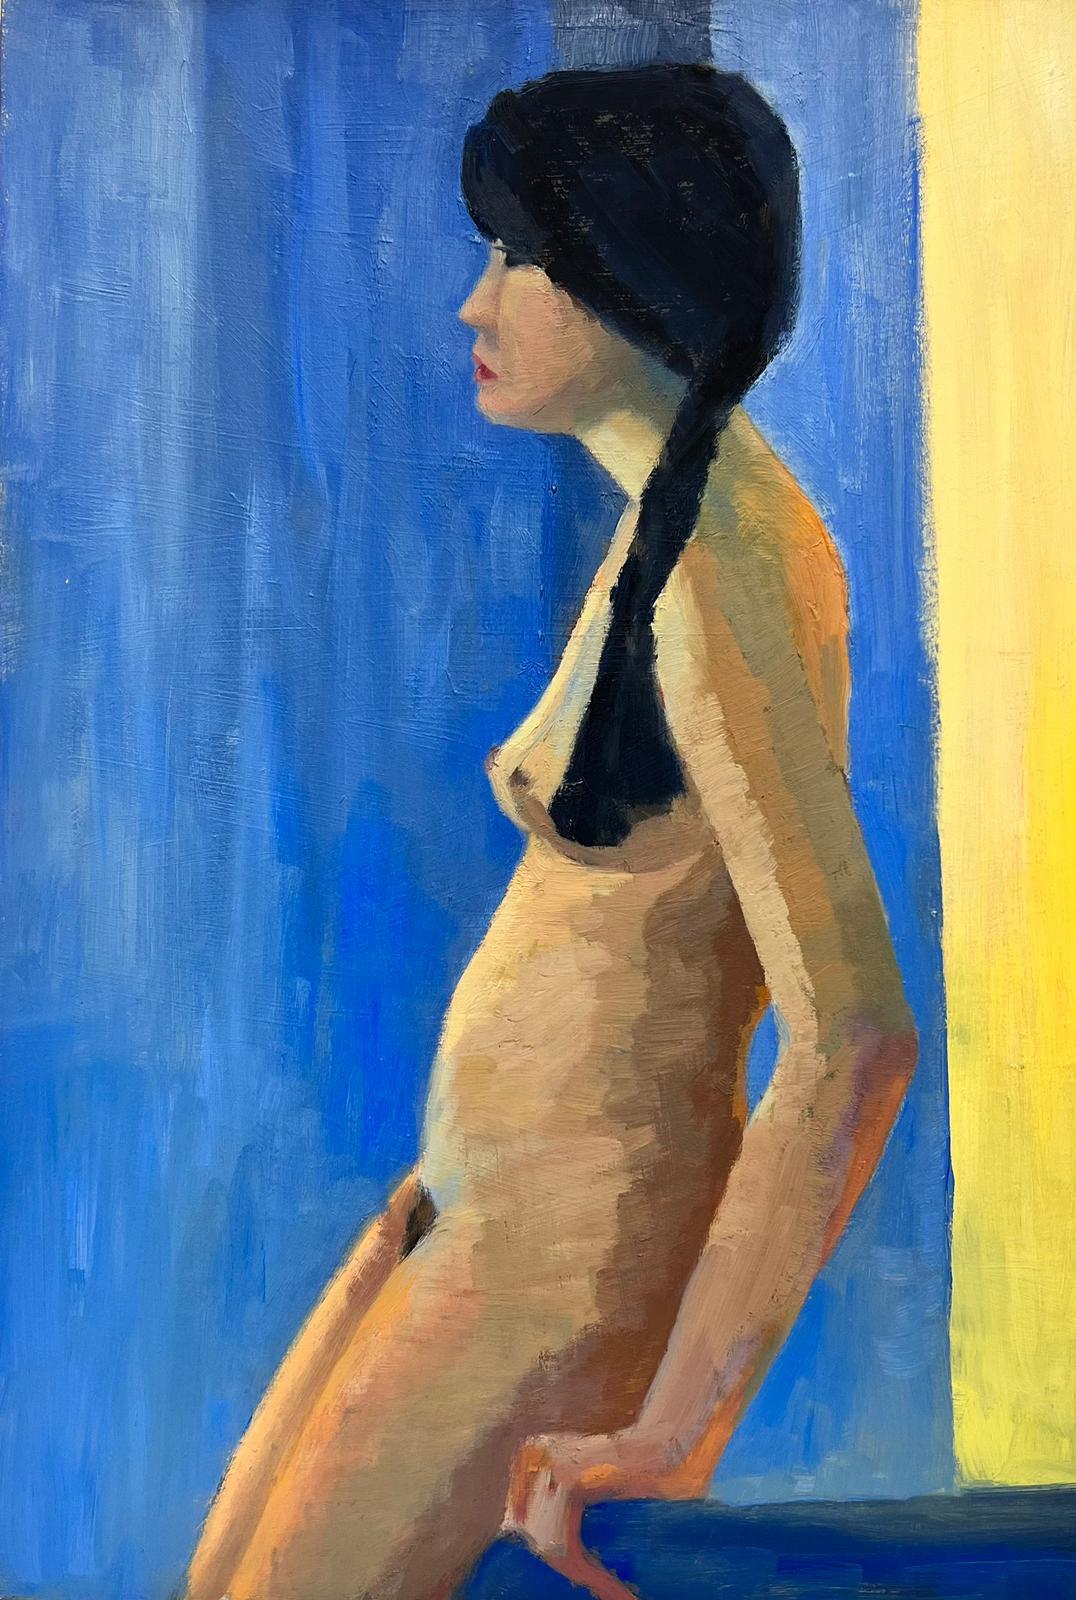 Portrait à l'huile britannique contemporain d'une femme nue, couleurs de fond bleu et jaune